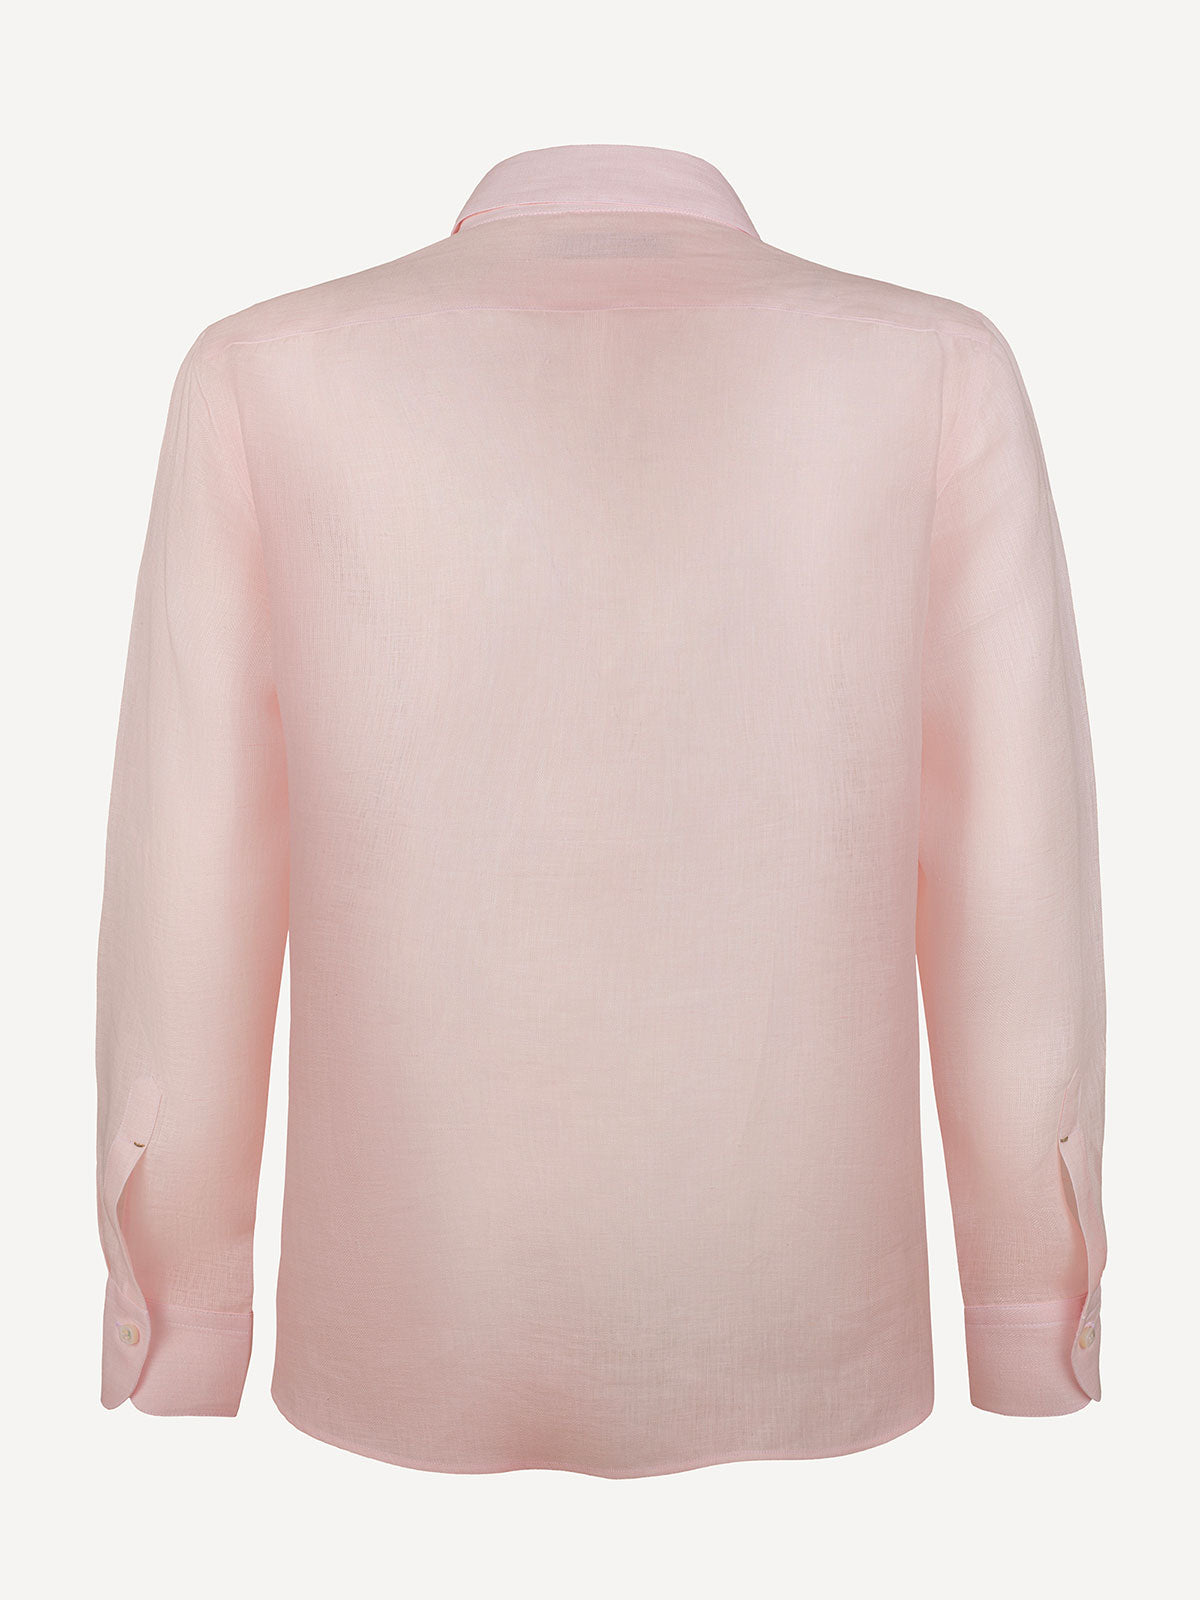 Camicia Hand Made 100% Capri pink linen shirt back